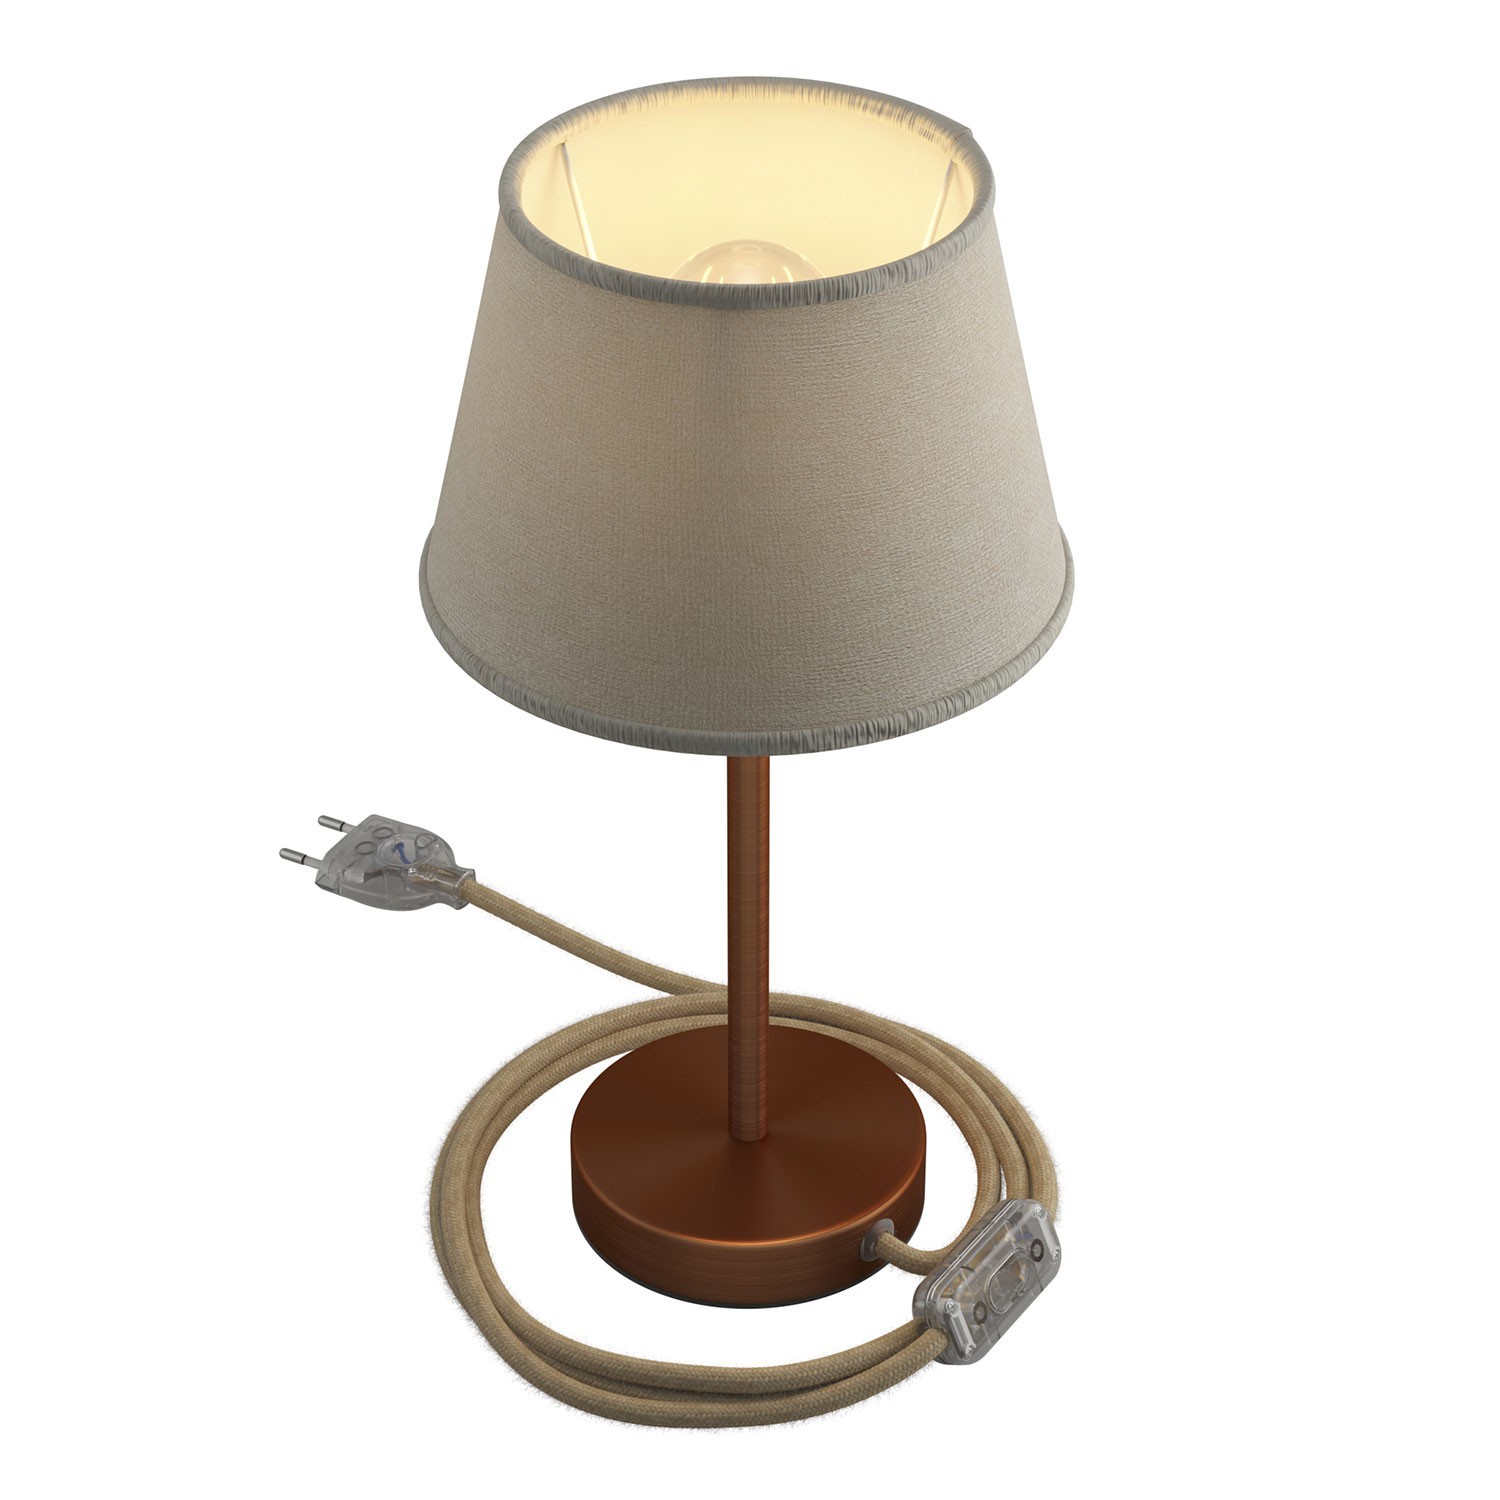 Namizno kovinsko svetilo Alzaluce s senčilom Impero, s kablom, stikalom in vtikačem